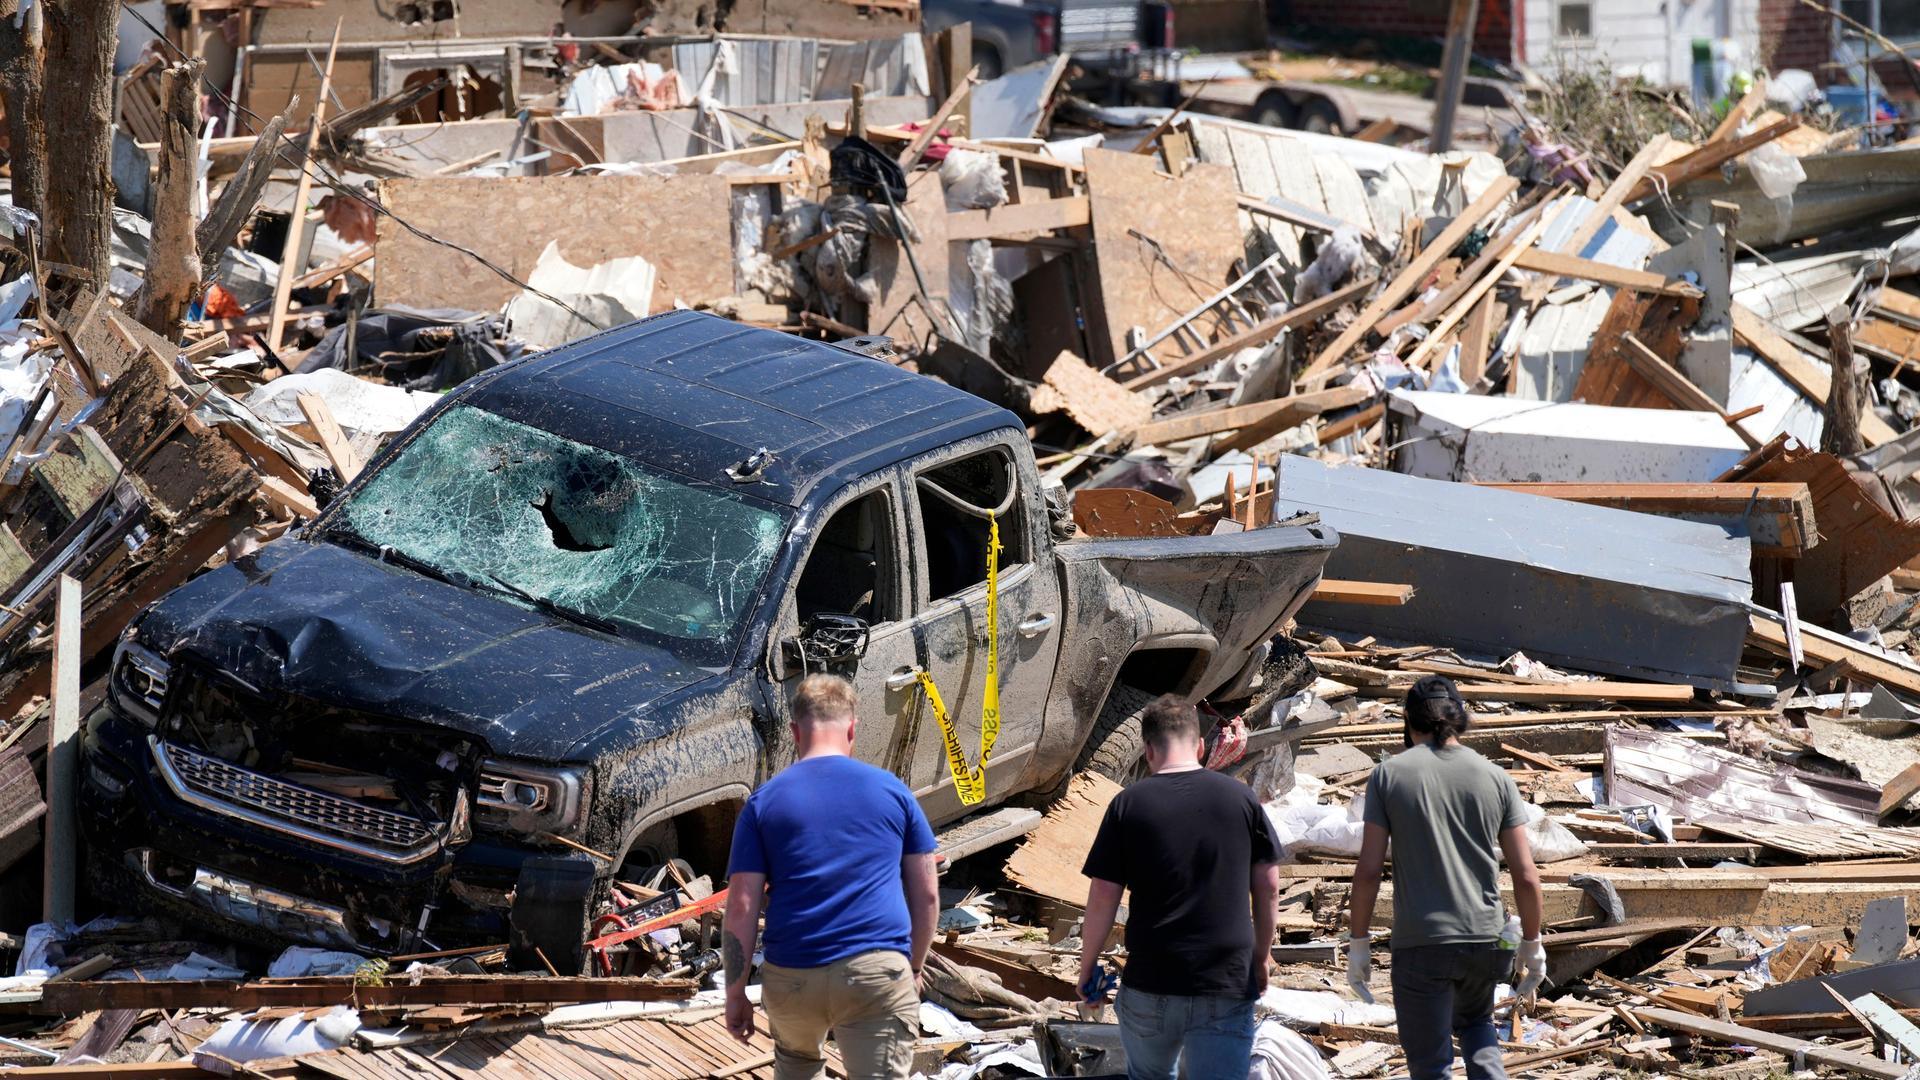 Menschen beschauen sich die Zerstörung durch einen Tornado in Greenfield, Iowa an. Man sieht Trümmer und ein völlig zerstörtes Auto.